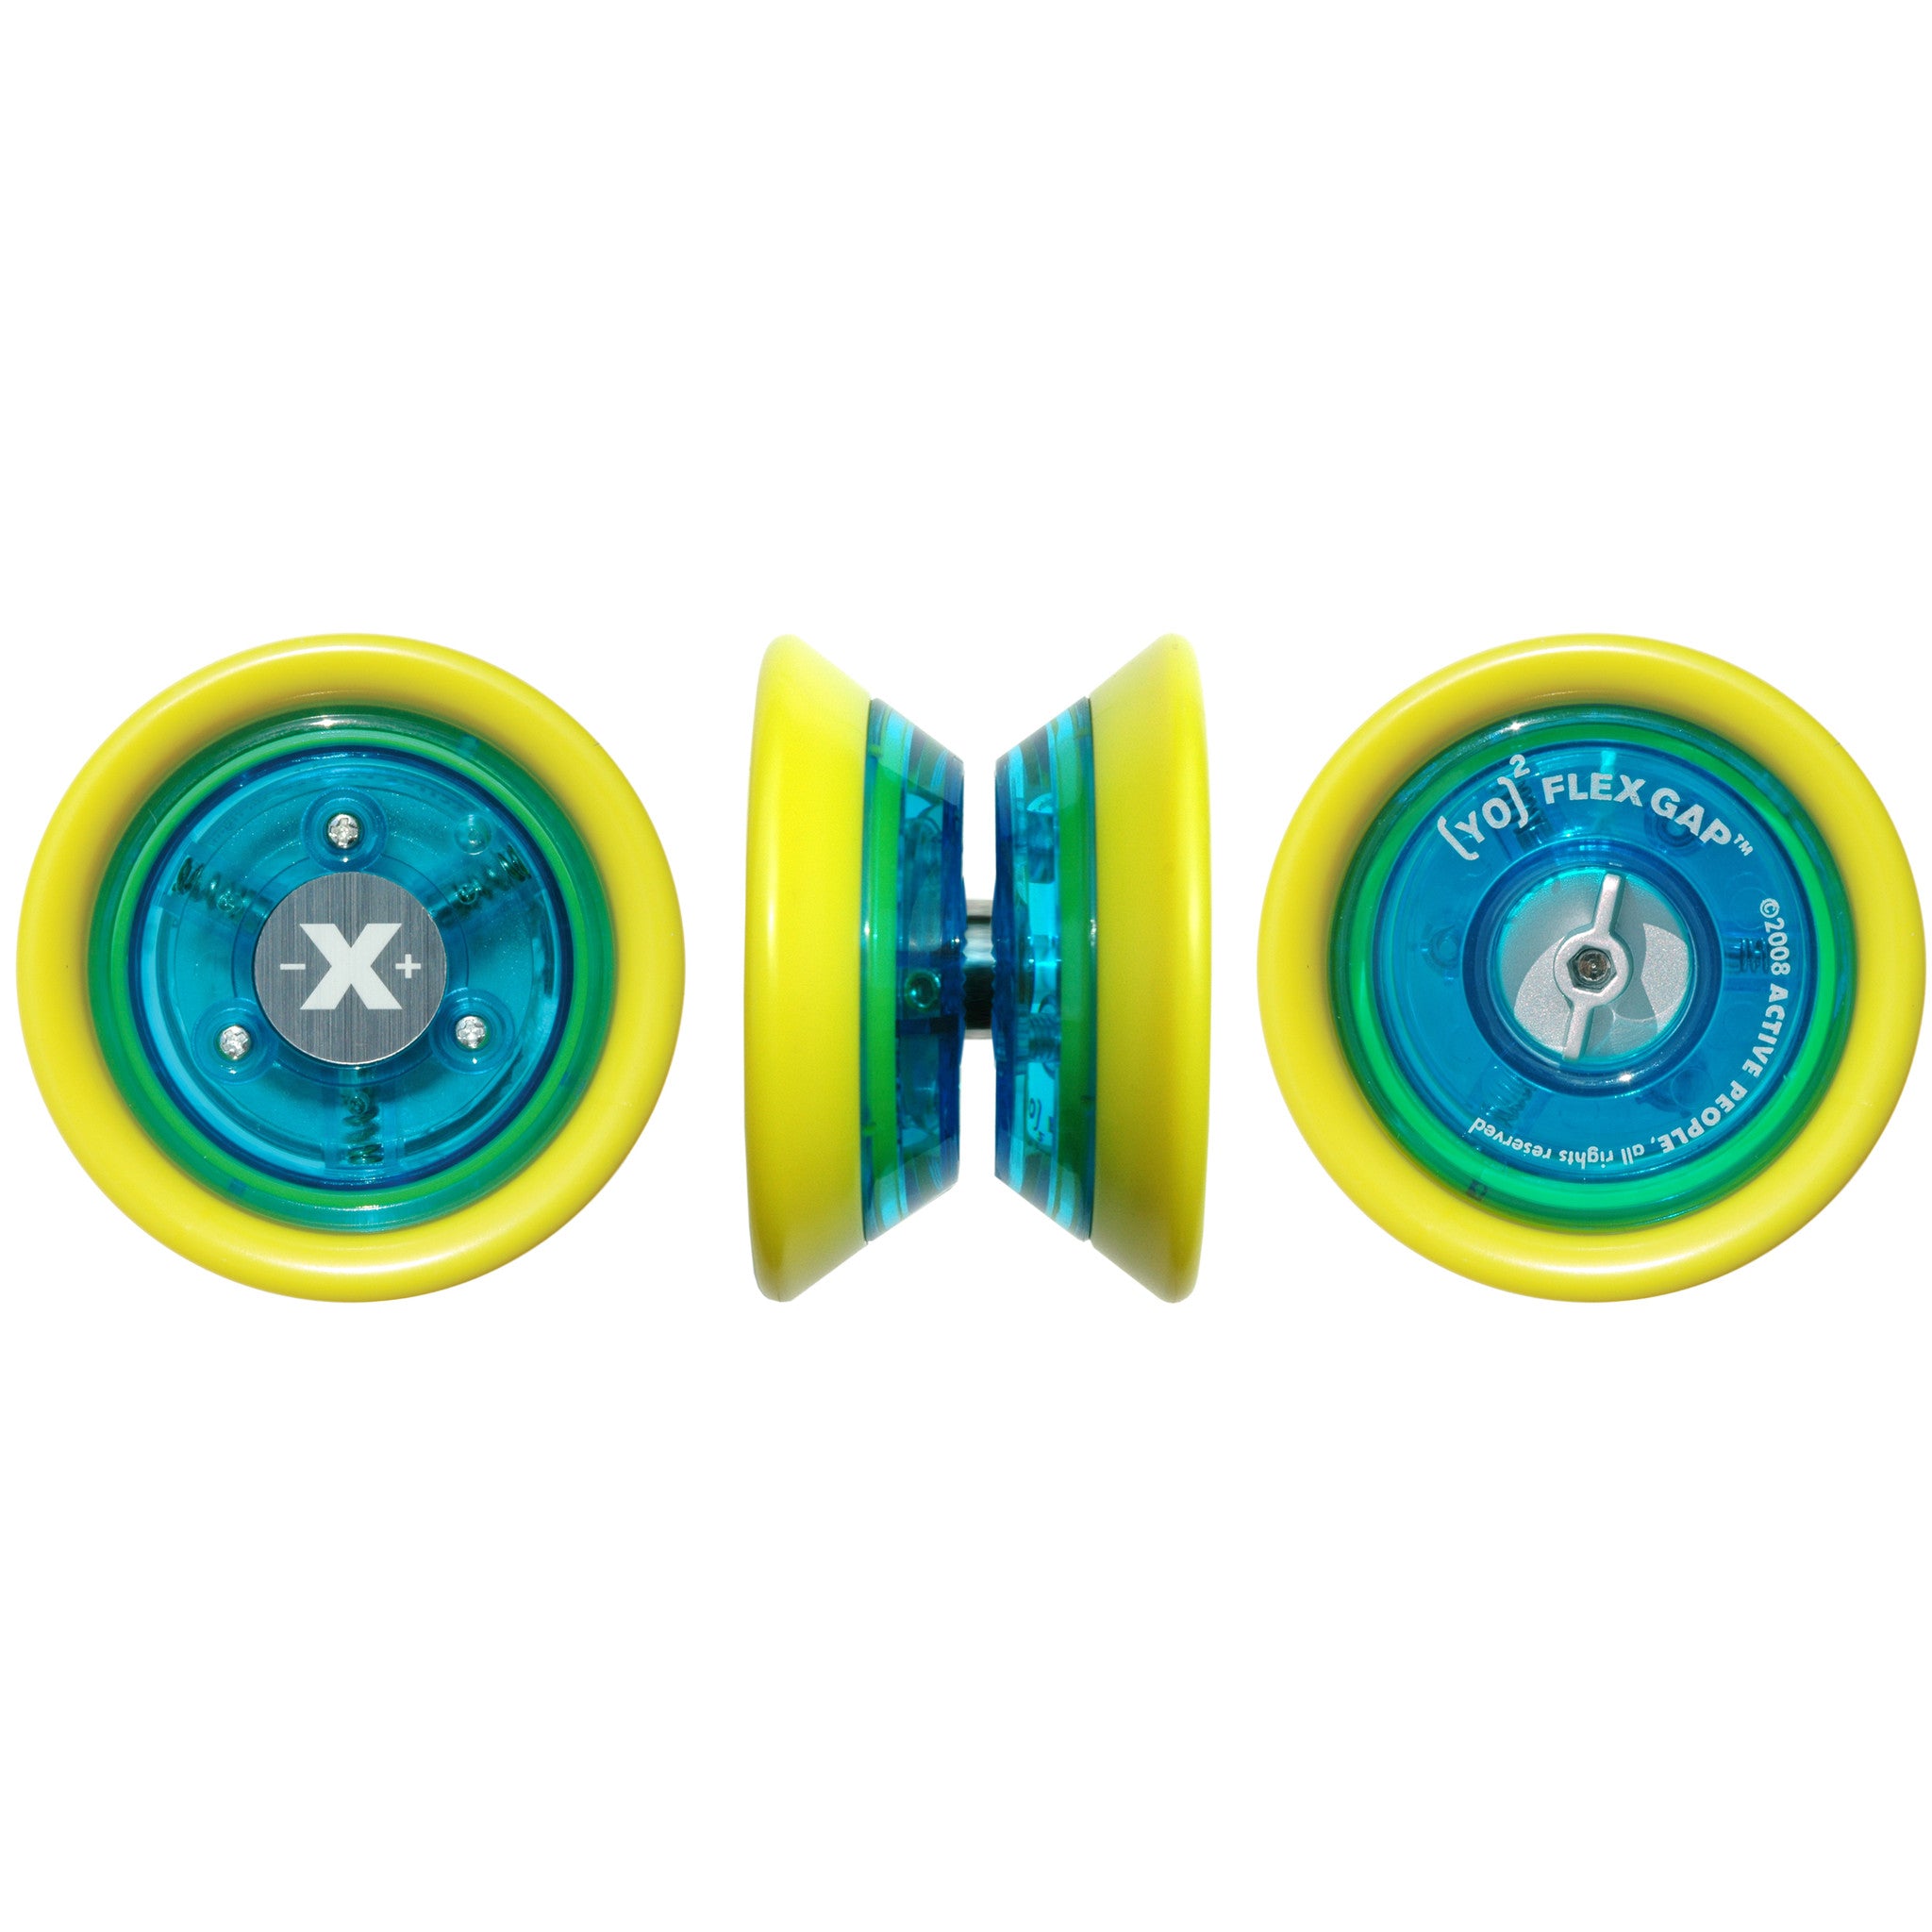 Regn maling Vask vinduer YO]2 Flex Gap Yo-yo | Yellow & Blue – Zsig